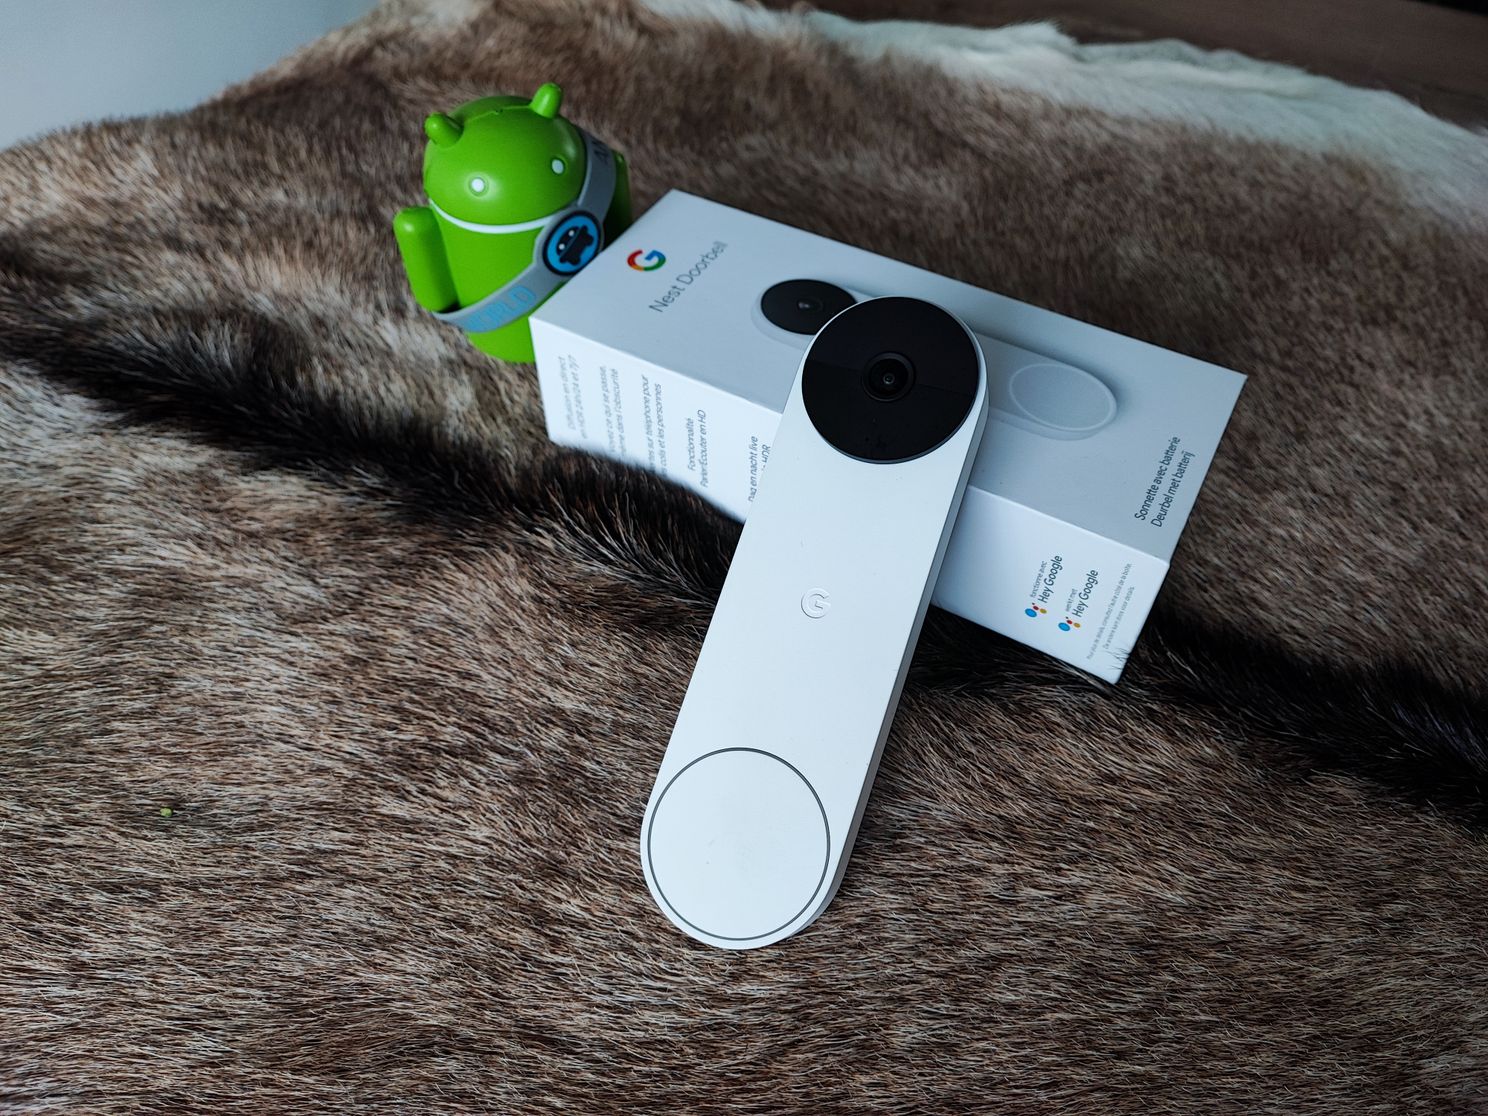 Google Nest Doorbell review: slimme deurbel met veel opties